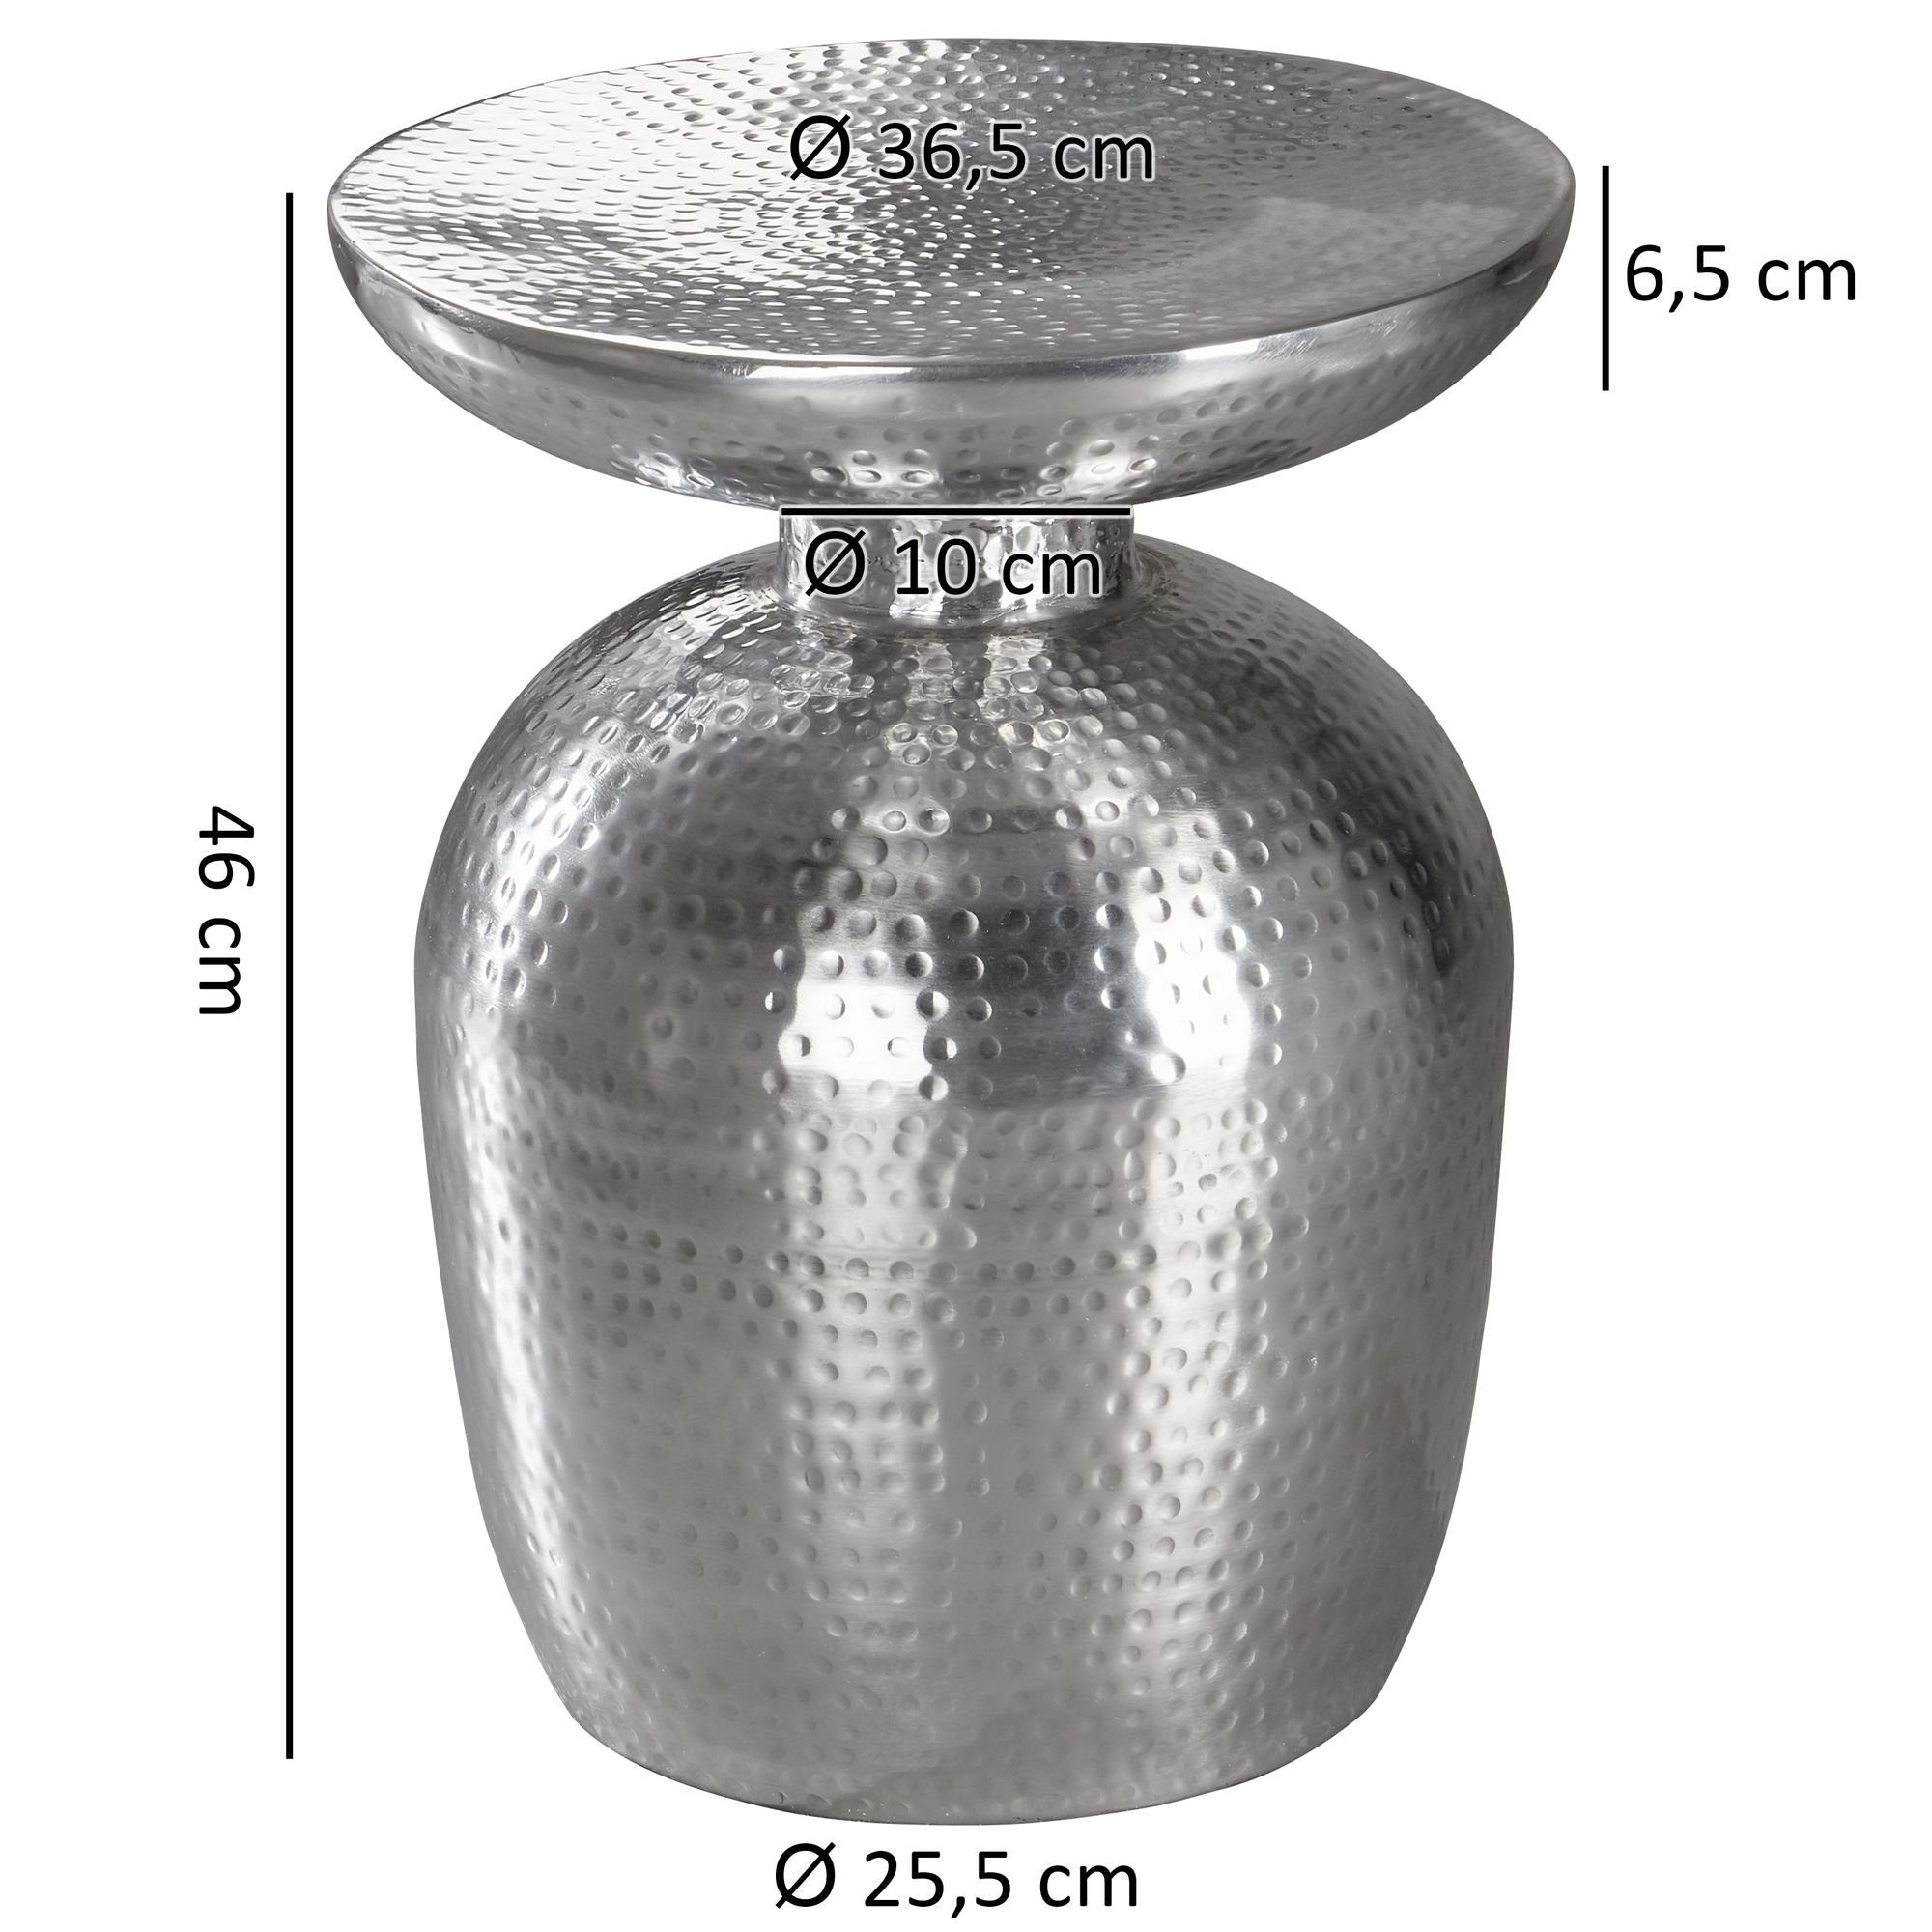 FINEBUY Beistelltisch SuVa12209_1 (36,5x46x36,5 cm Aluminium Kleiner Wohnzimmertisch, Orientalisch Silber Silber | Hammerschlag | Sofatisch Rund), Silber Silber